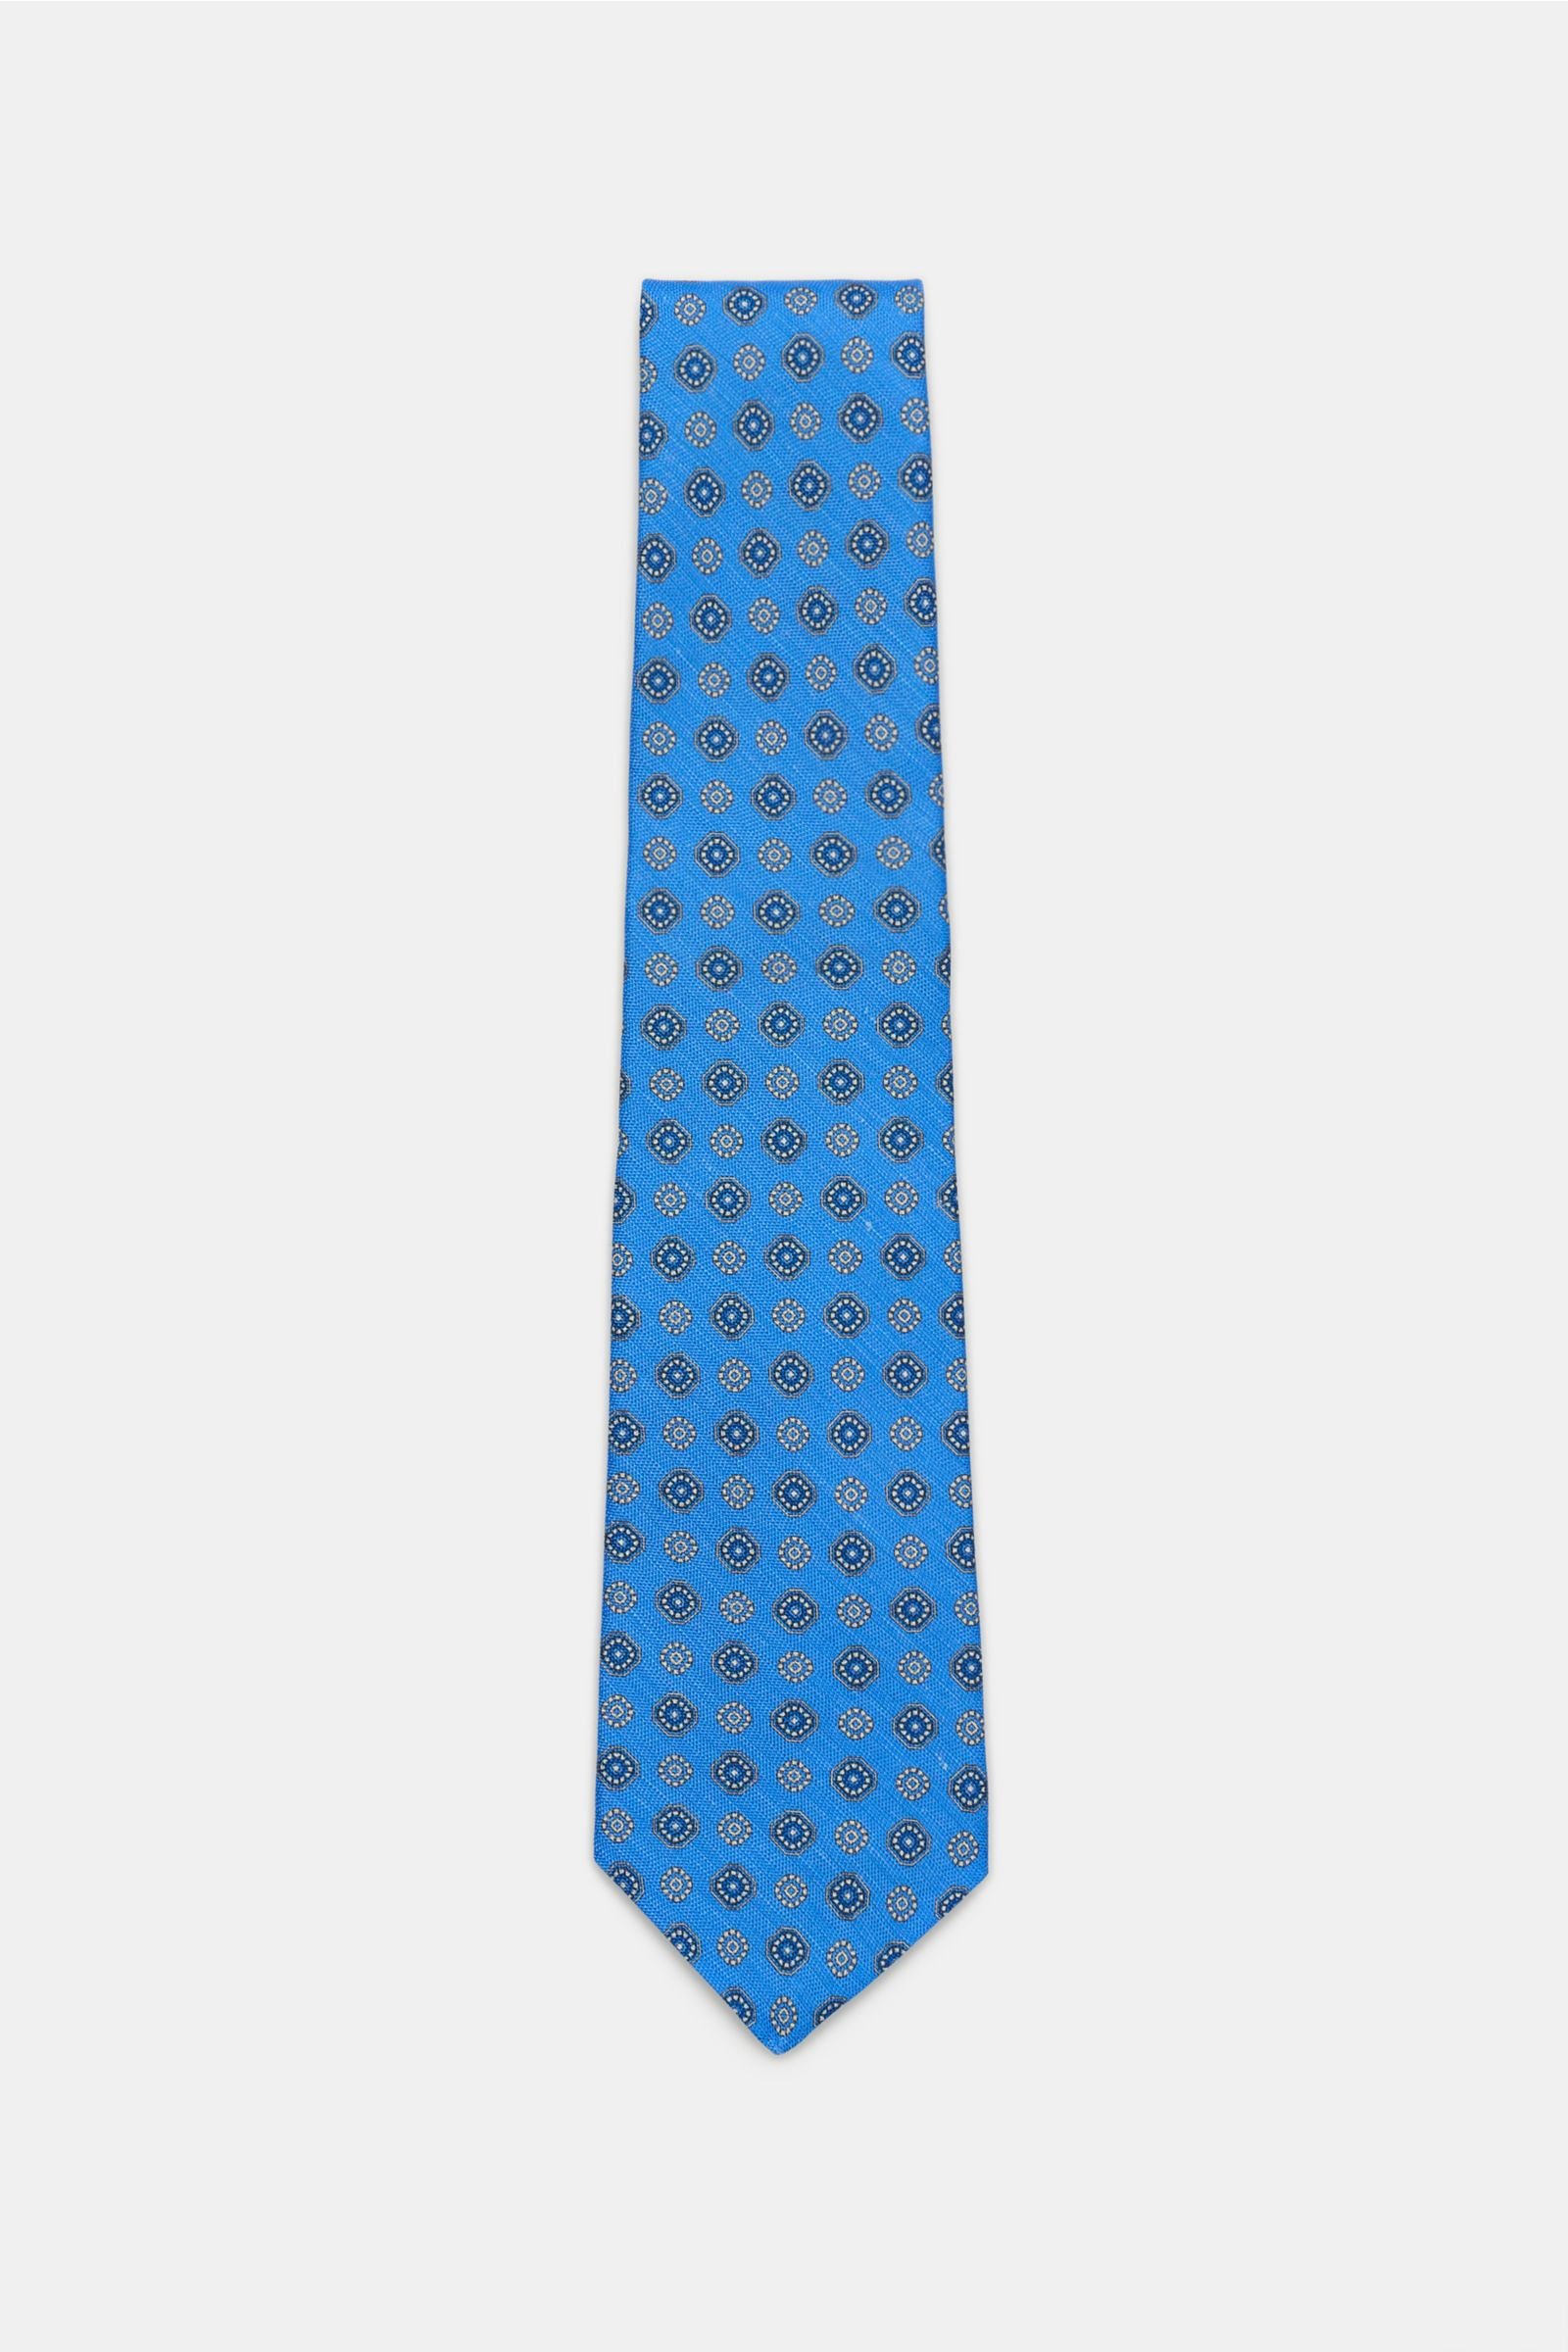 Tie smoky blue patterned